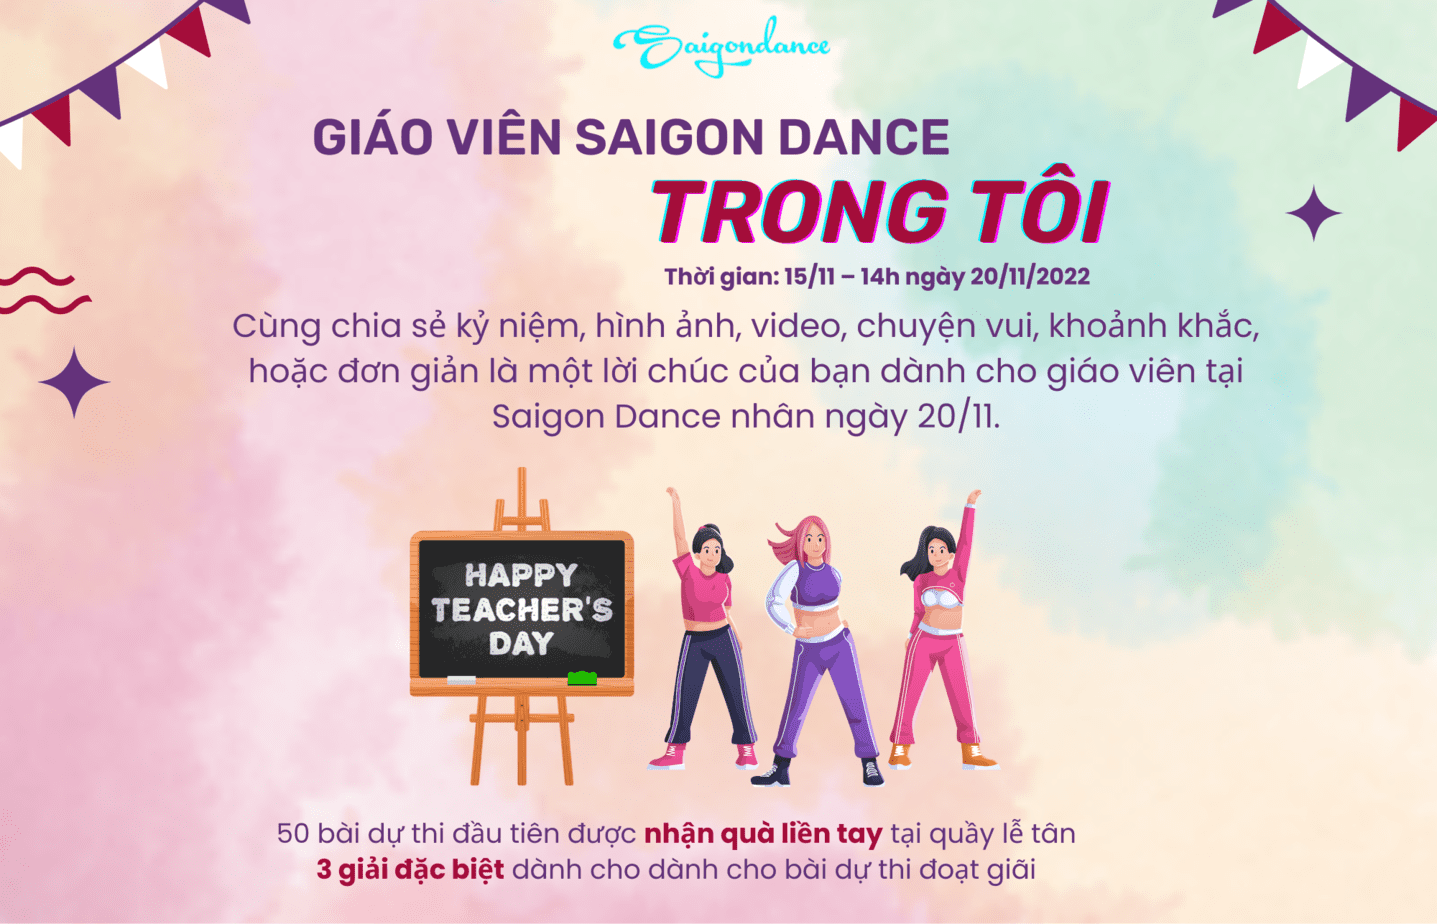 Nhận quà liền tay cùng Cuộc thi "Giáo viên Saigon Dance trong tôi" 7